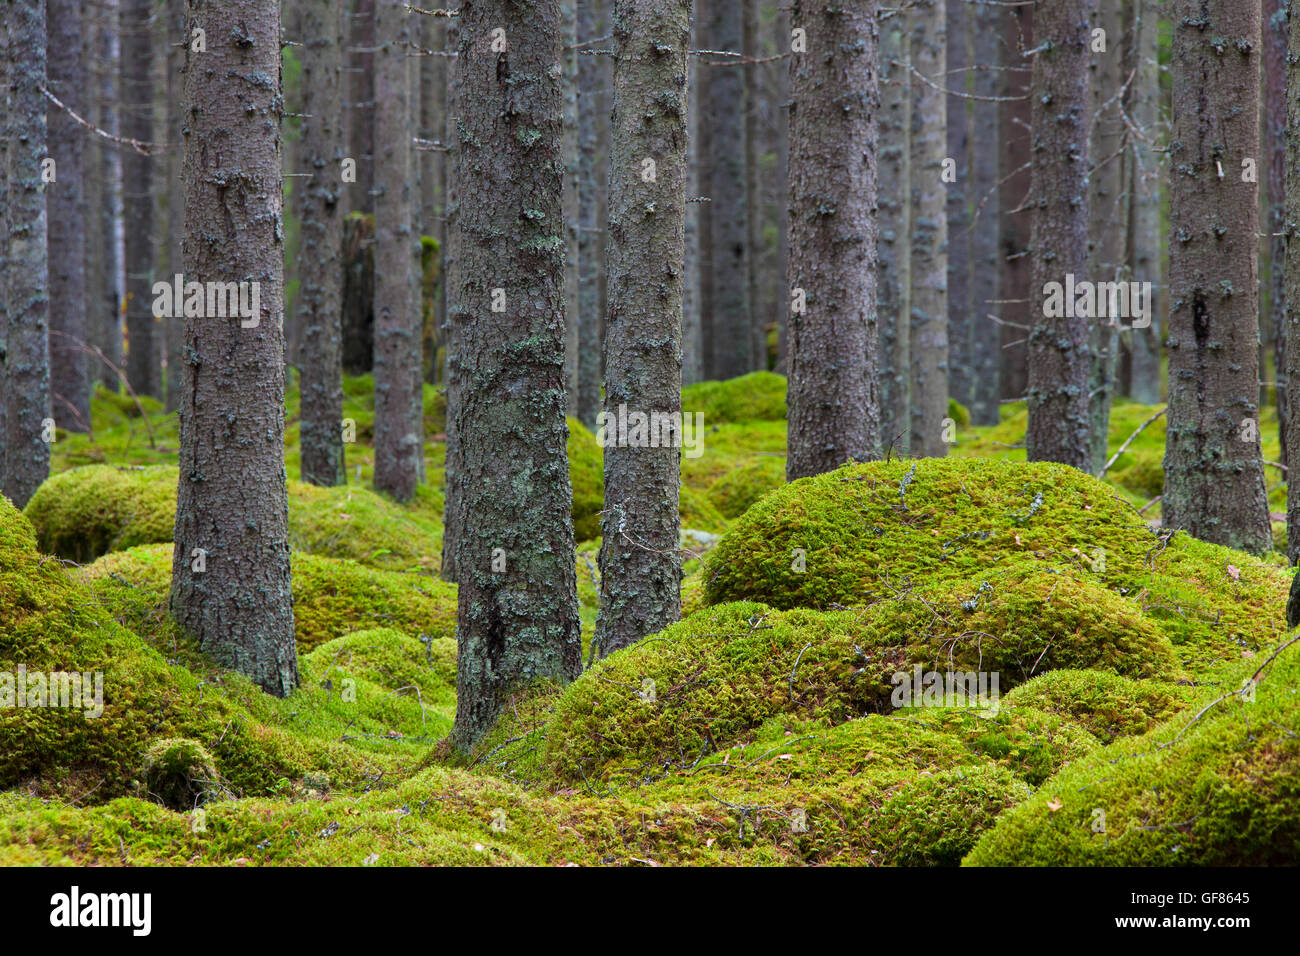 Norvegia abeti rossi / Europea abete rosso (Picea abies) tronchi di alberi coperti di licheni nel bosco di conifere con Moss Tappeto Foto Stock